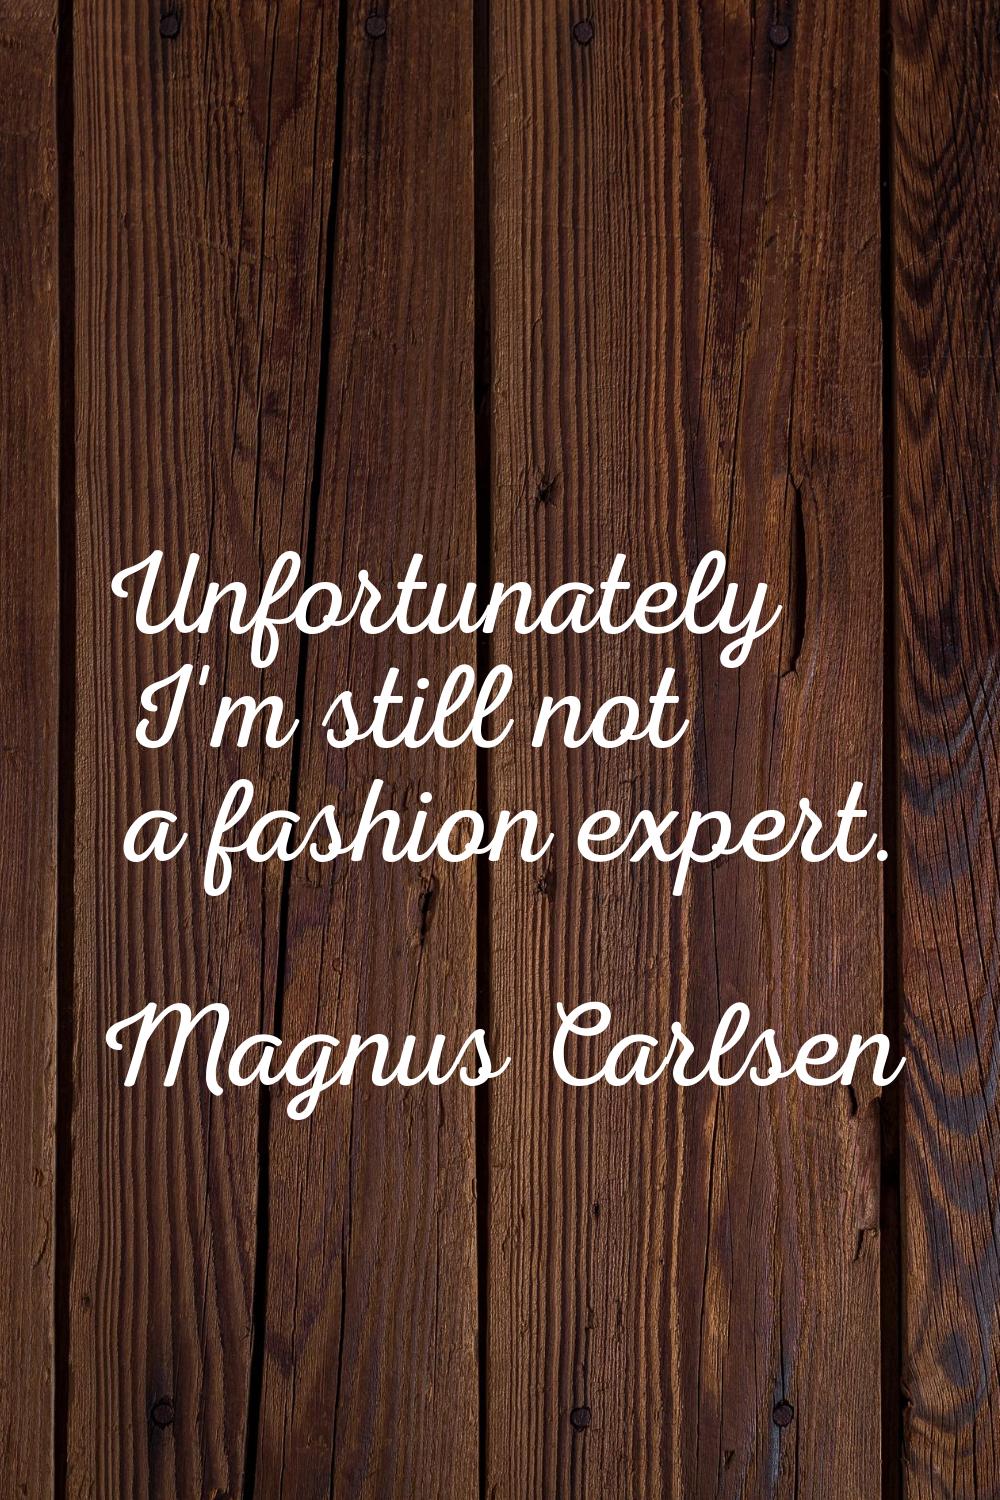 Unfortunately I'm still not a fashion expert.